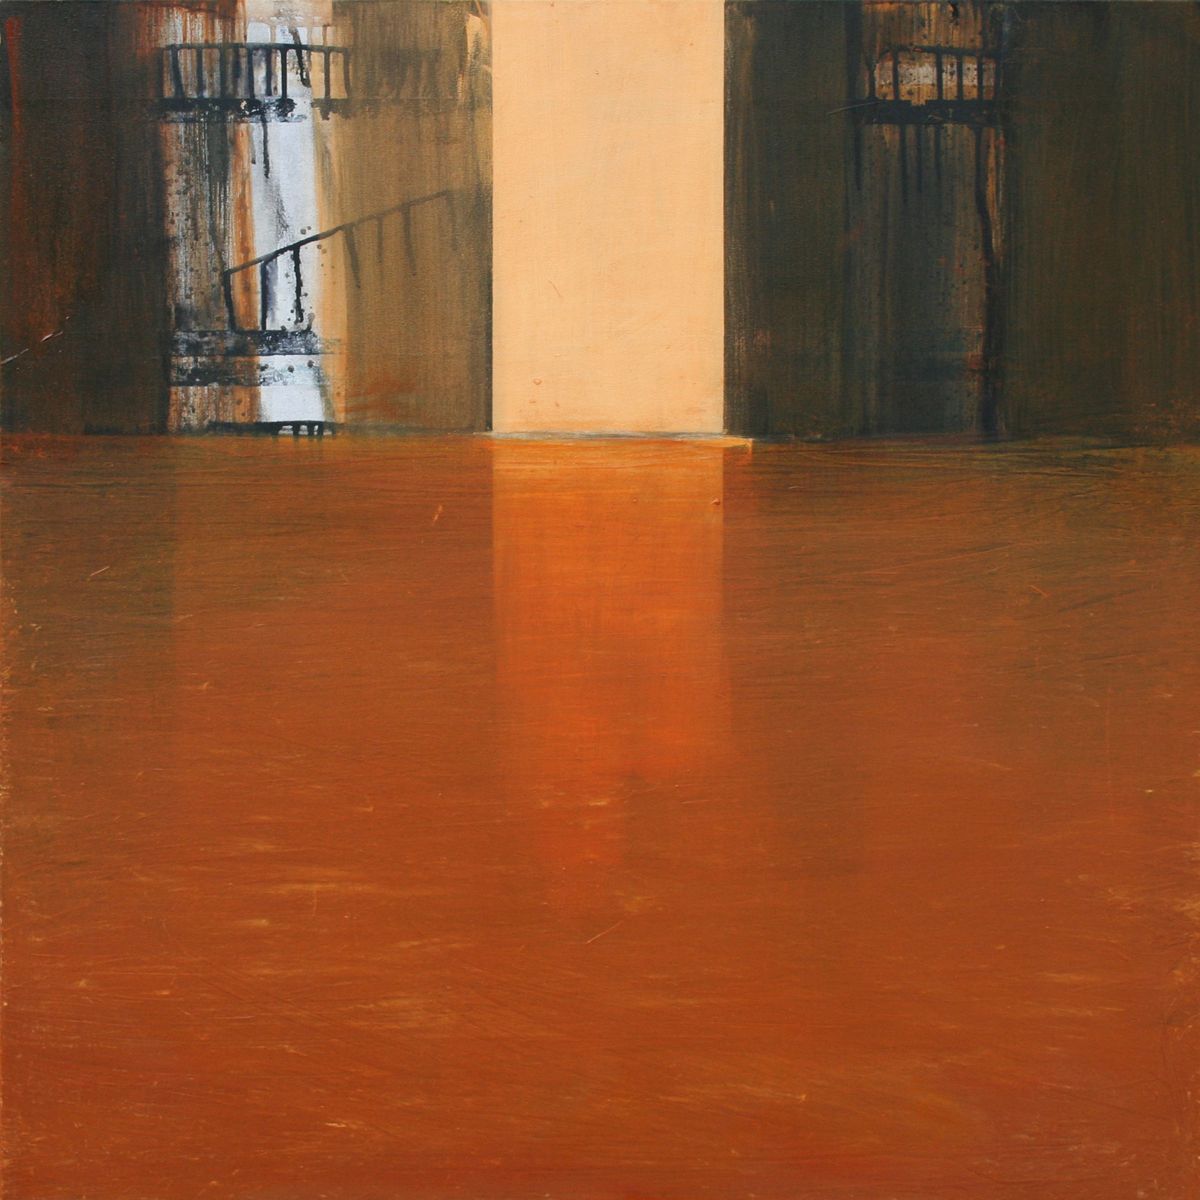 Passage 09 - 100x100cm - oil on canvas